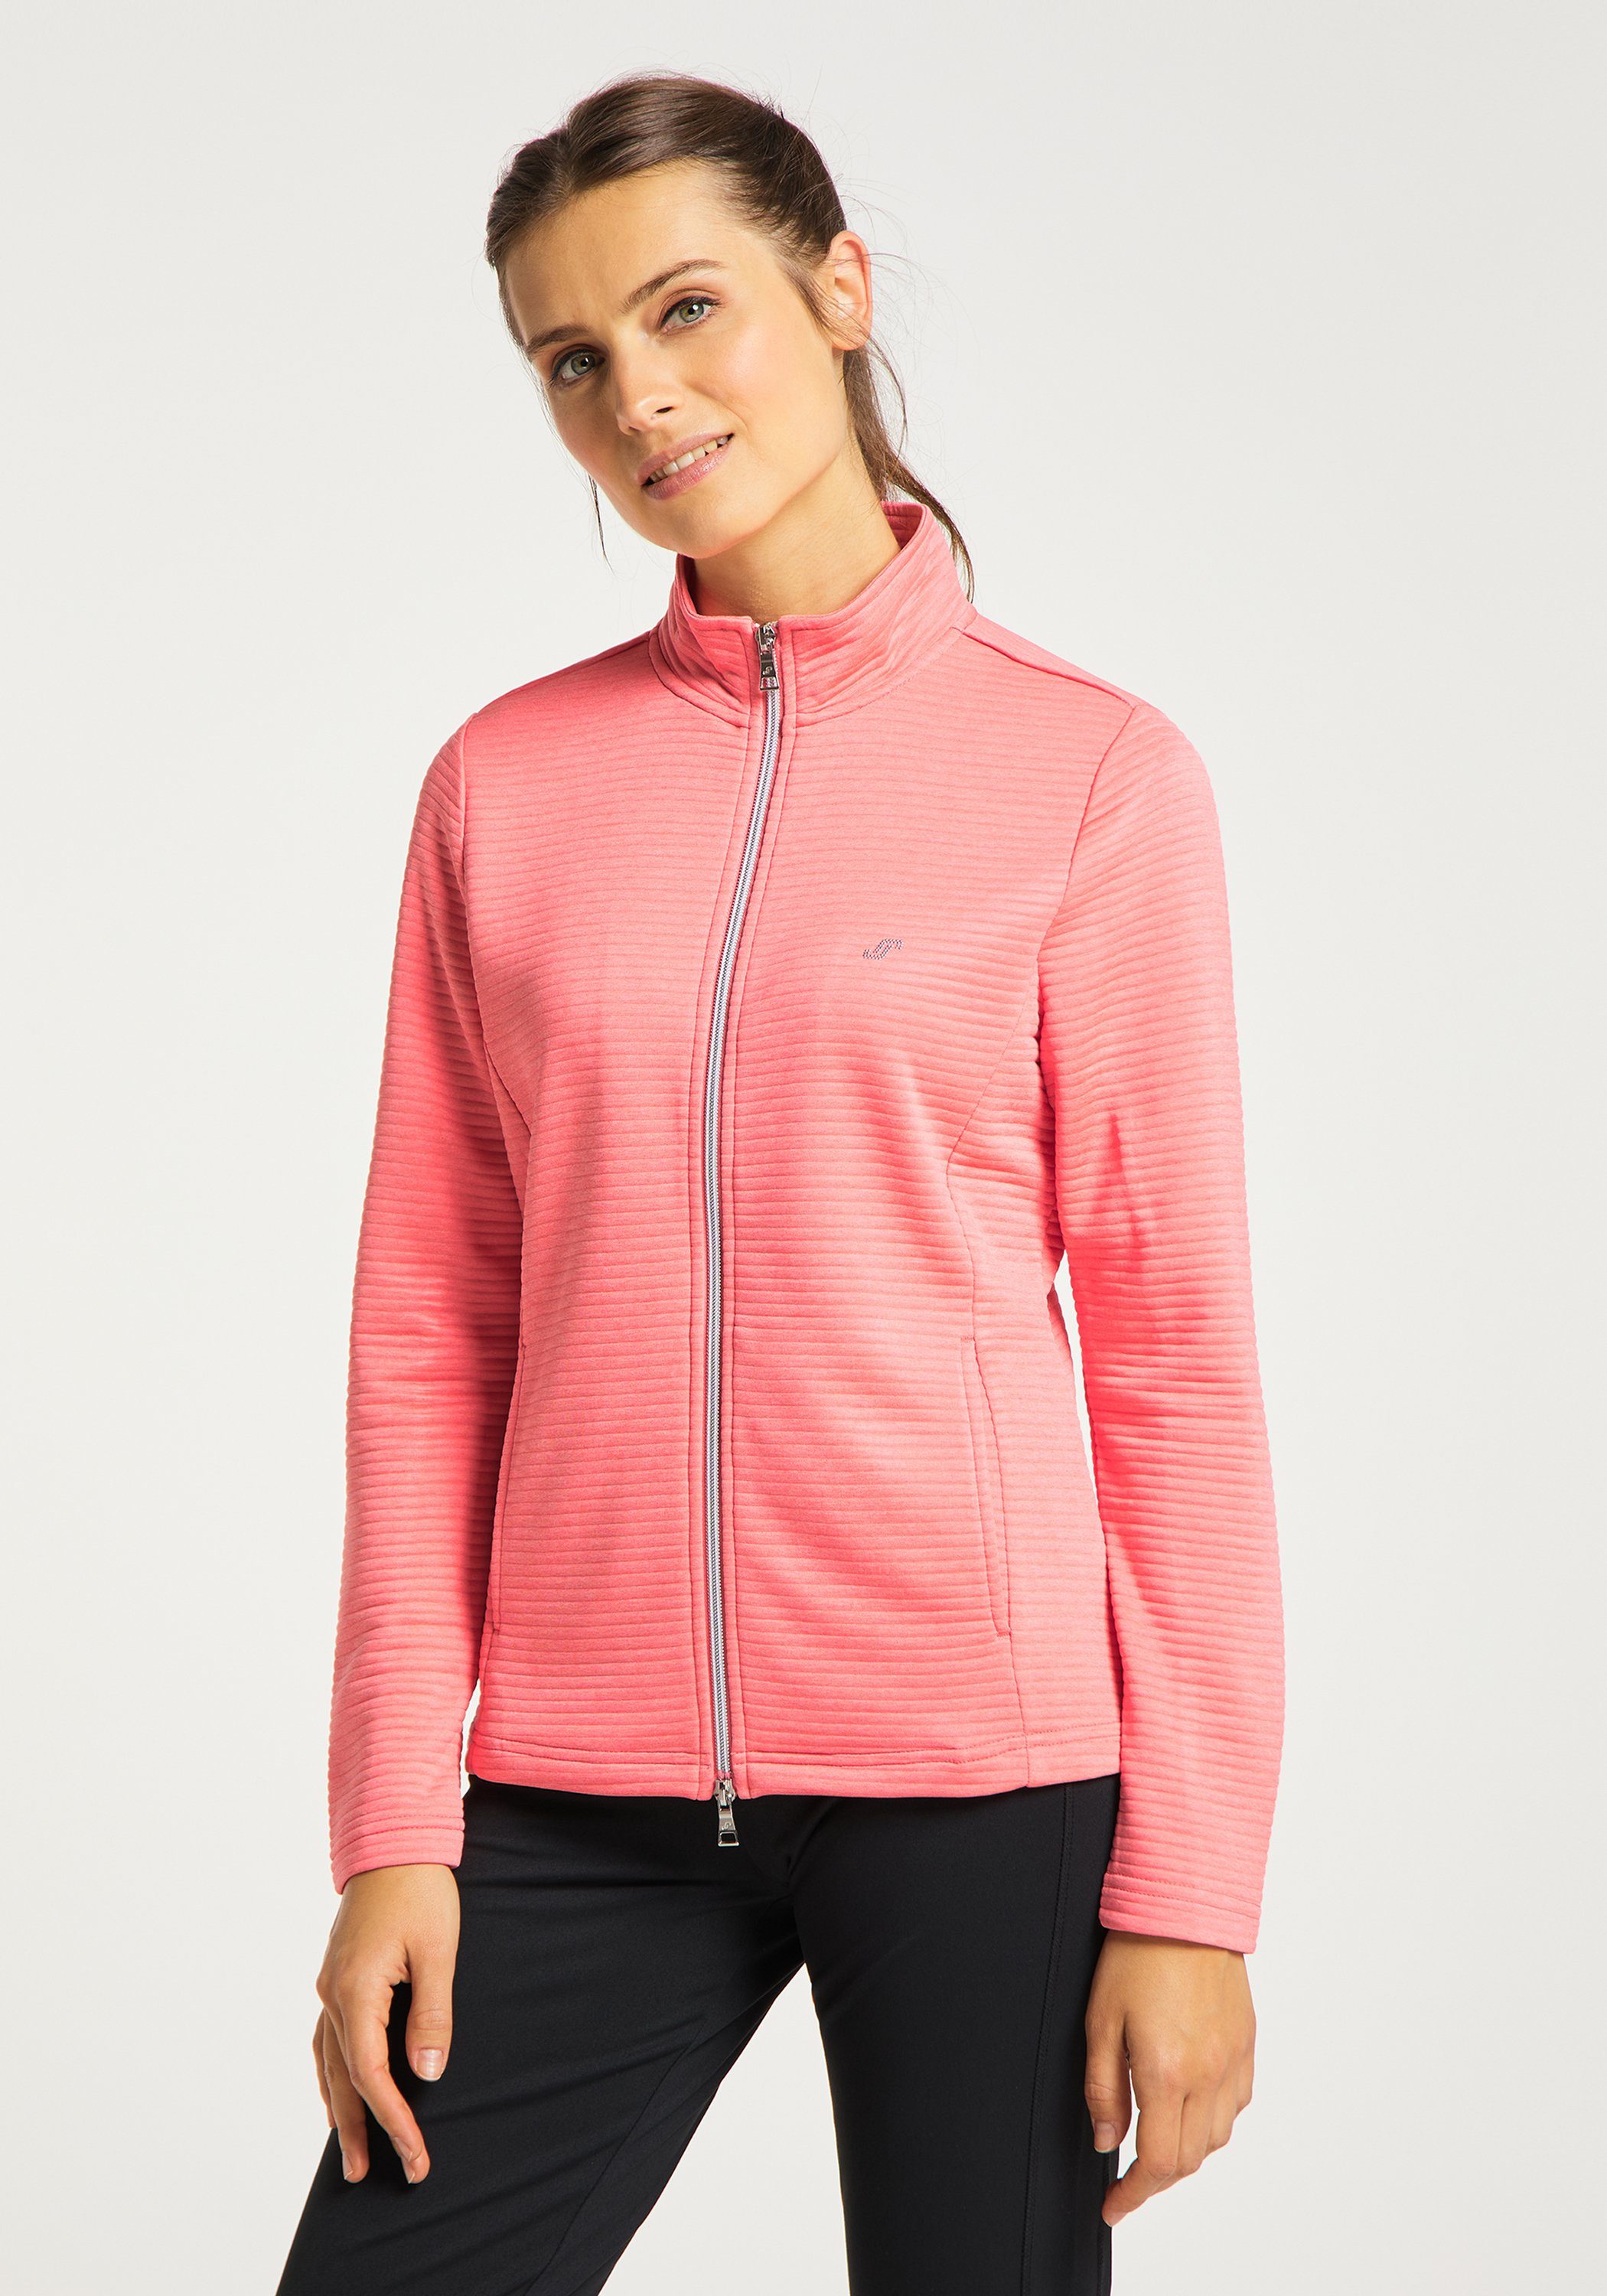 Jacke coral pink melange Joy Sportswear Trainingsjacke PEGGY